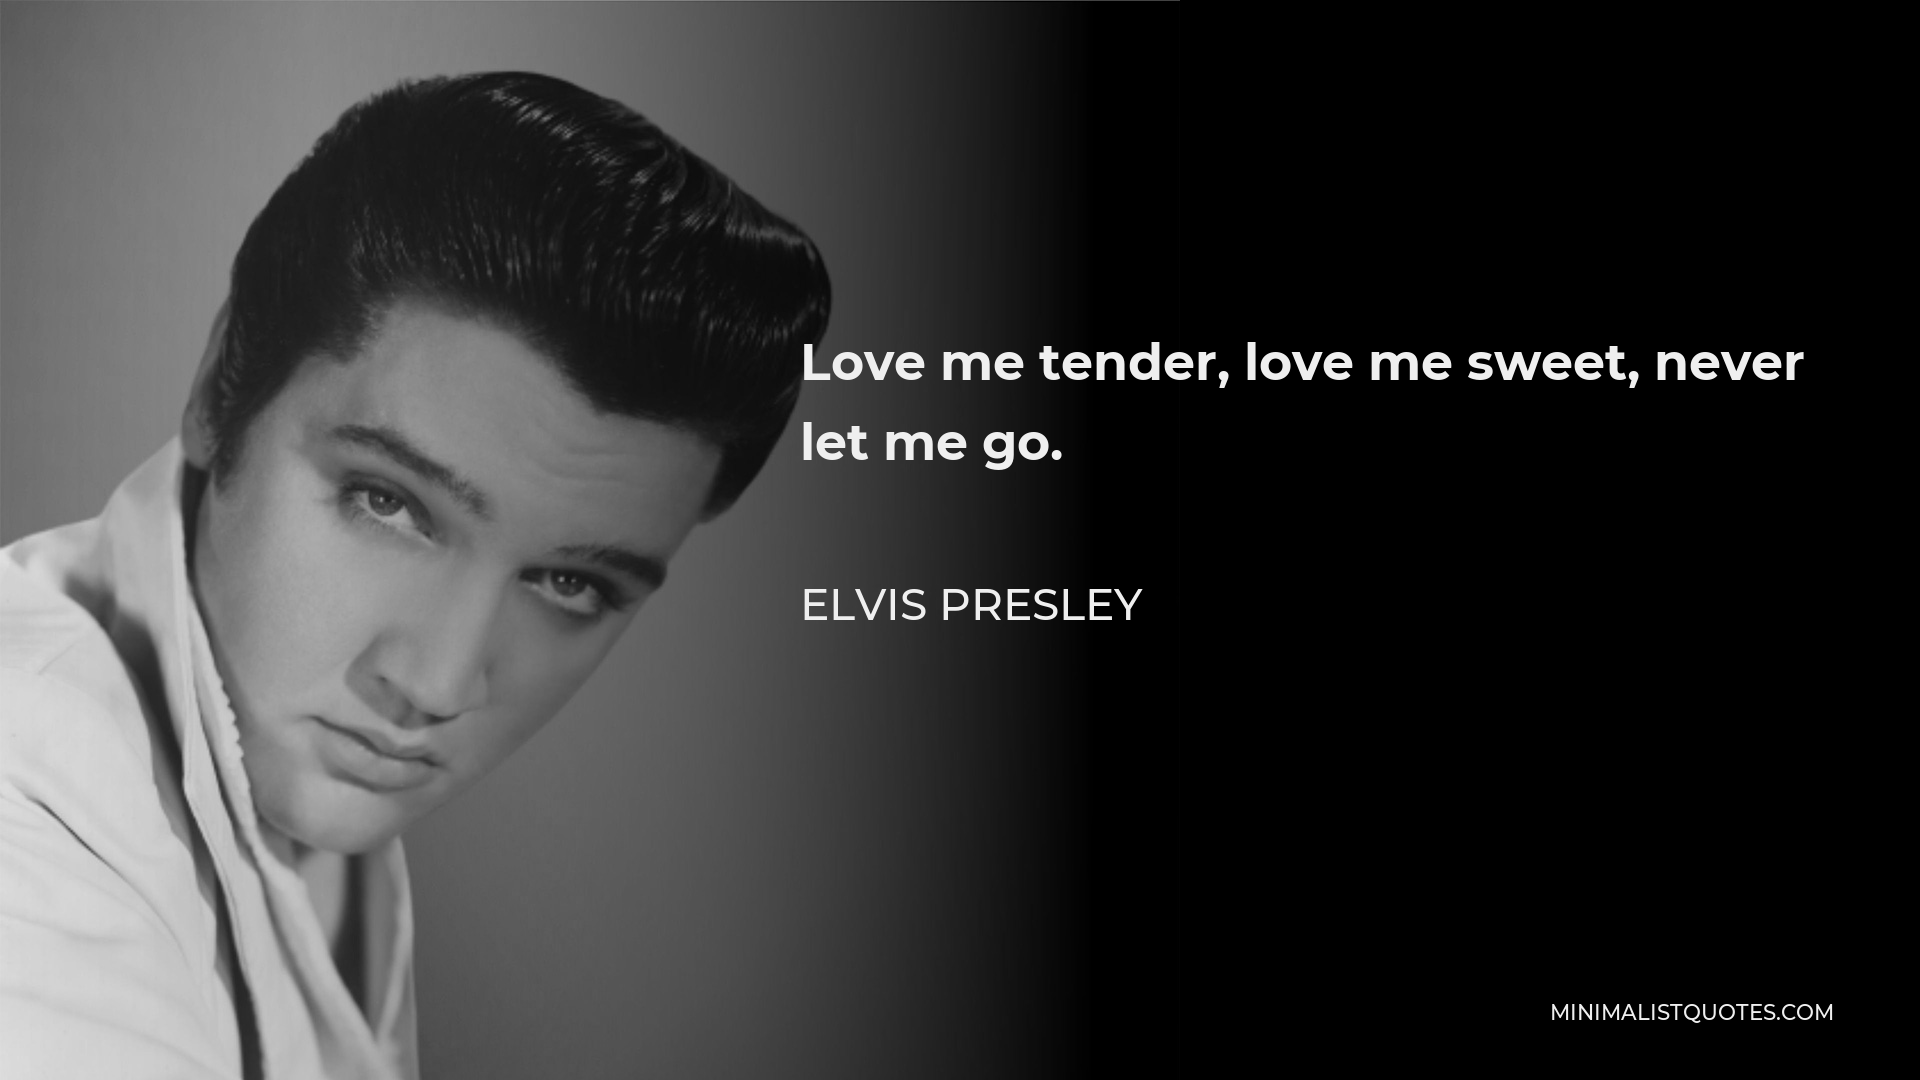 Elvis Presley Quote - Love me tender, love me sweet, never let me go.